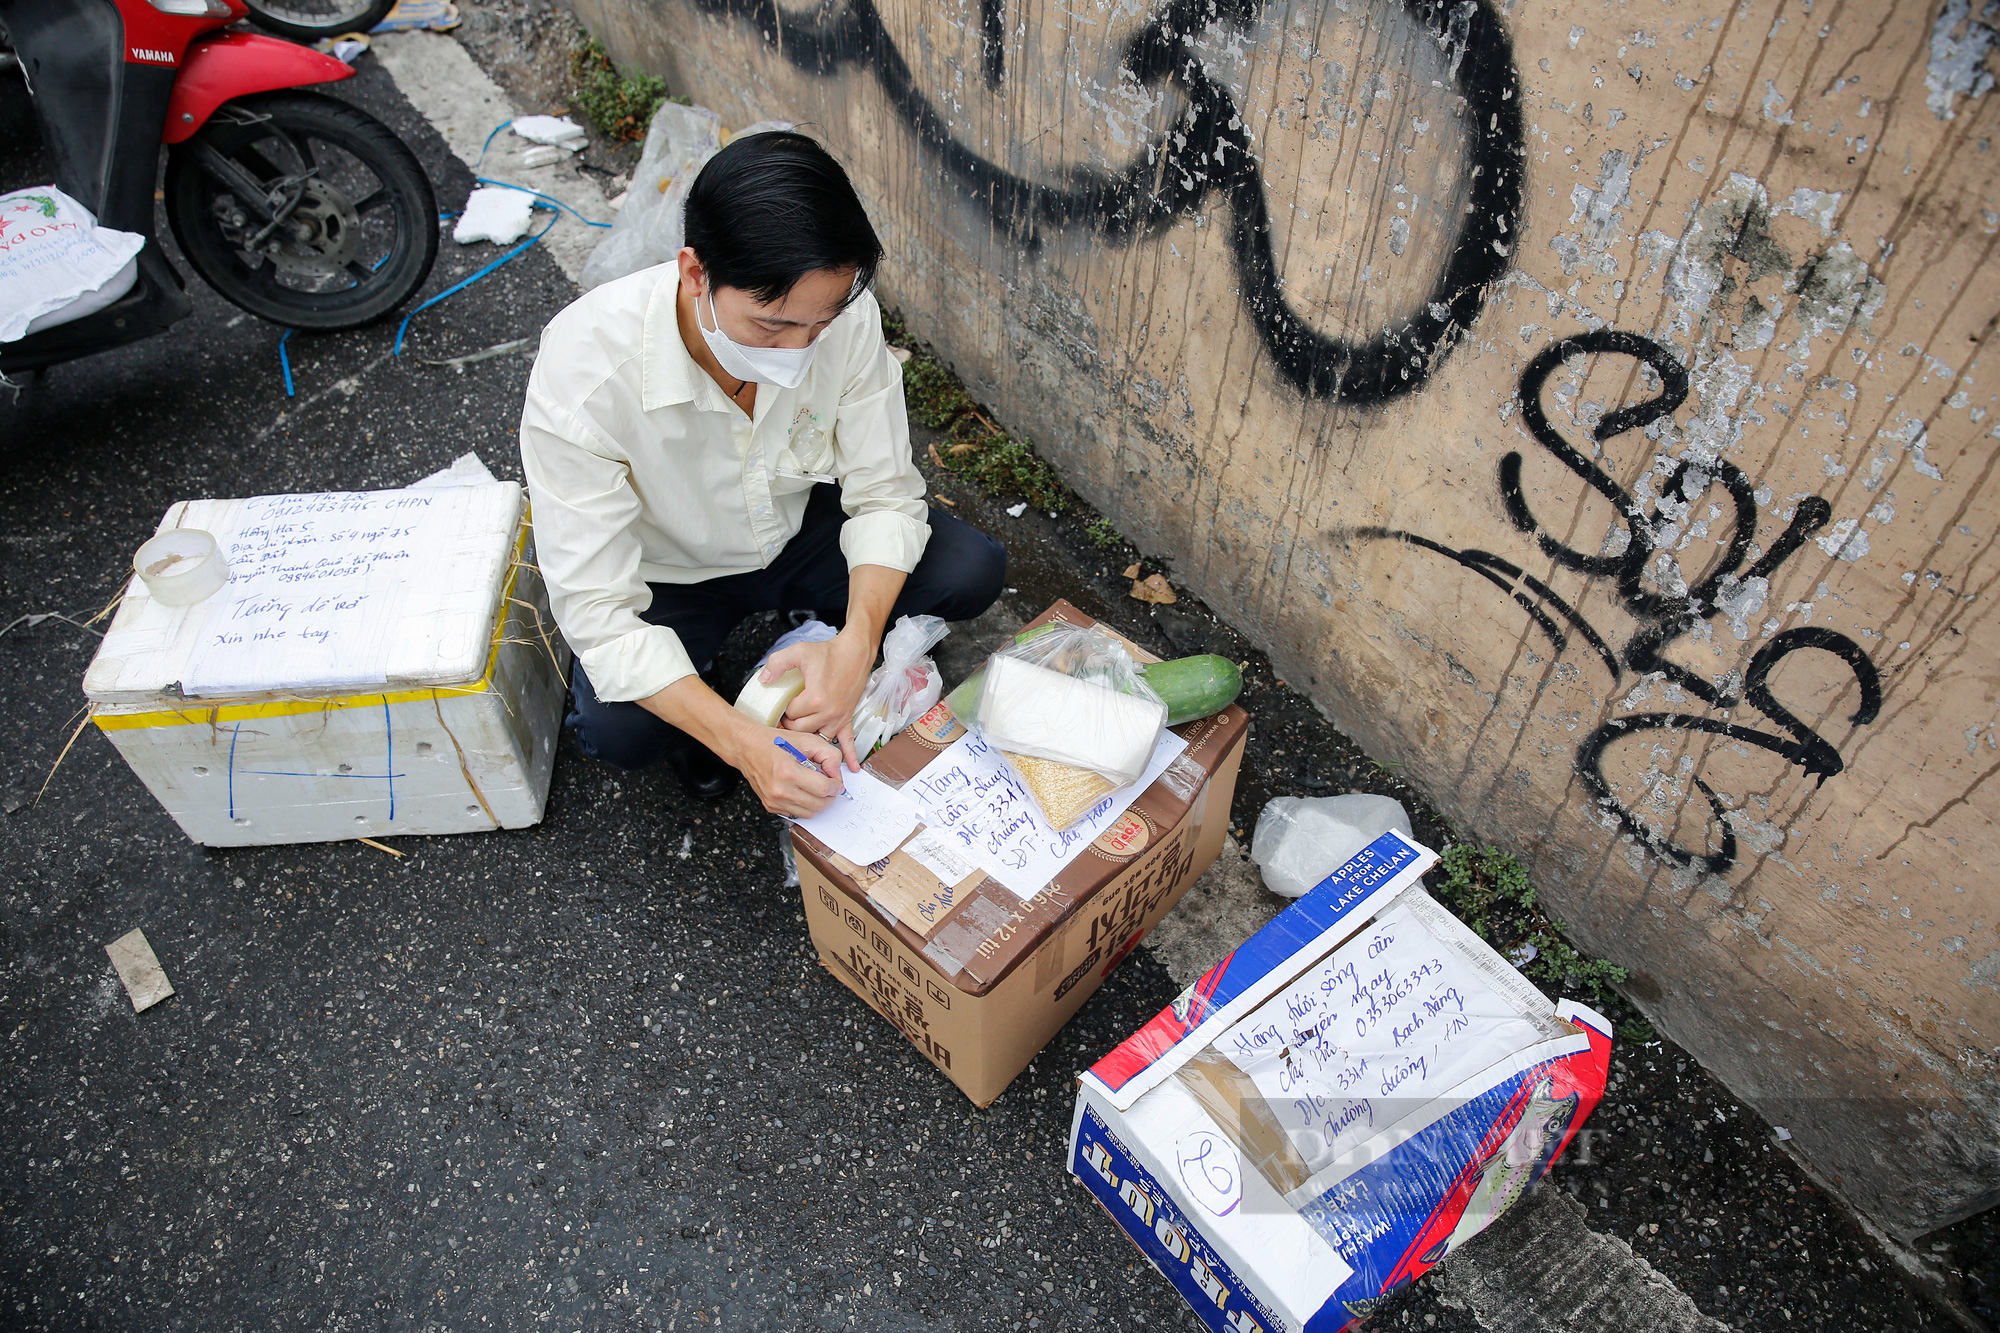 Hàng trăm người xếp hàng tiếp tế thực phẩm cho một phường bị cách ly thêm 14 ngày tại Hà Nội - Ảnh 7.